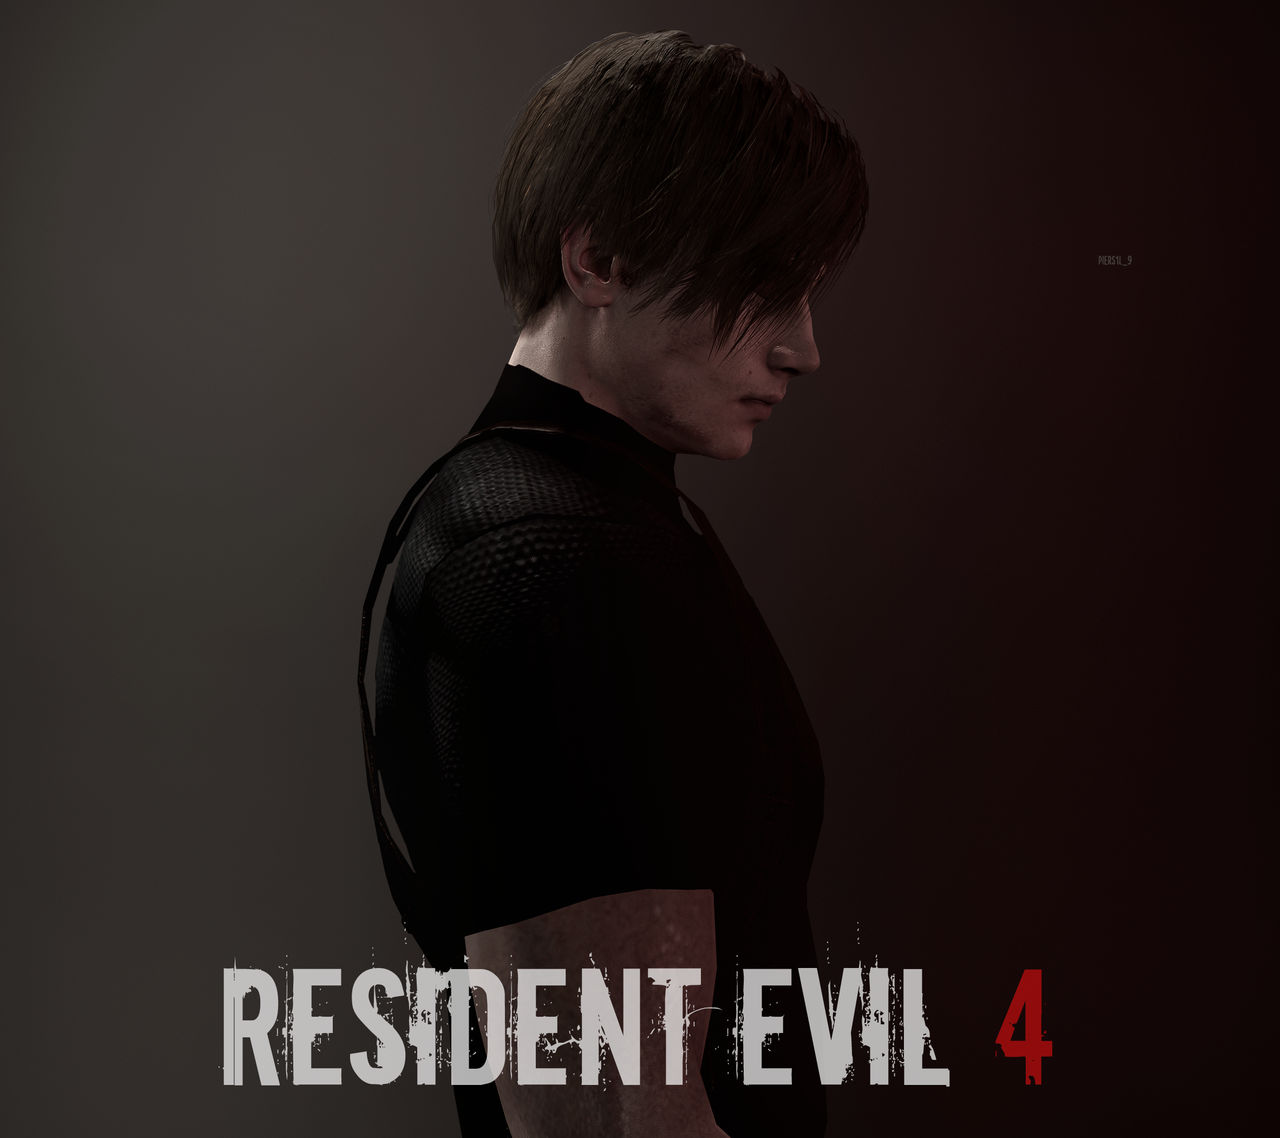 Wesker Render / Resident Evil 5 Remake by 4AHighPrice on DeviantArt